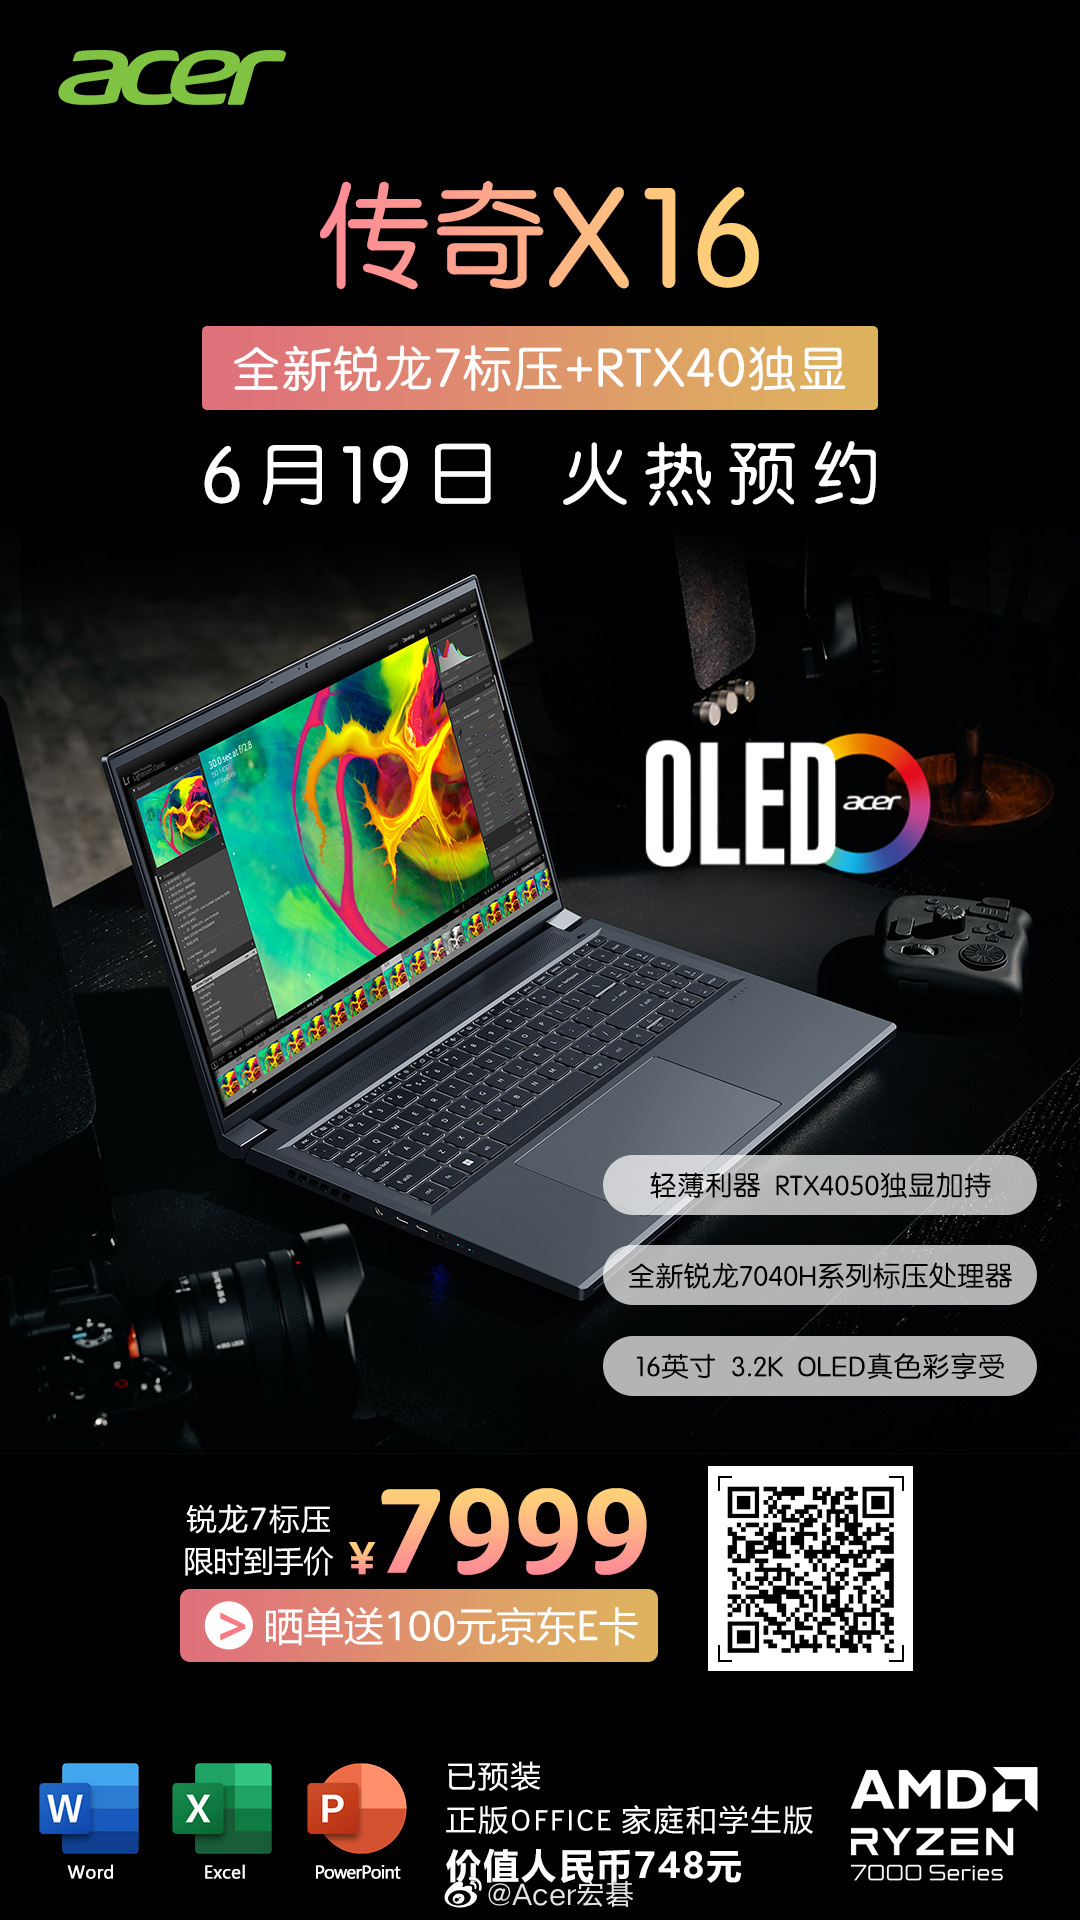 《宏碁传奇 X16》笔记本电脑开启预售：售价7999 元